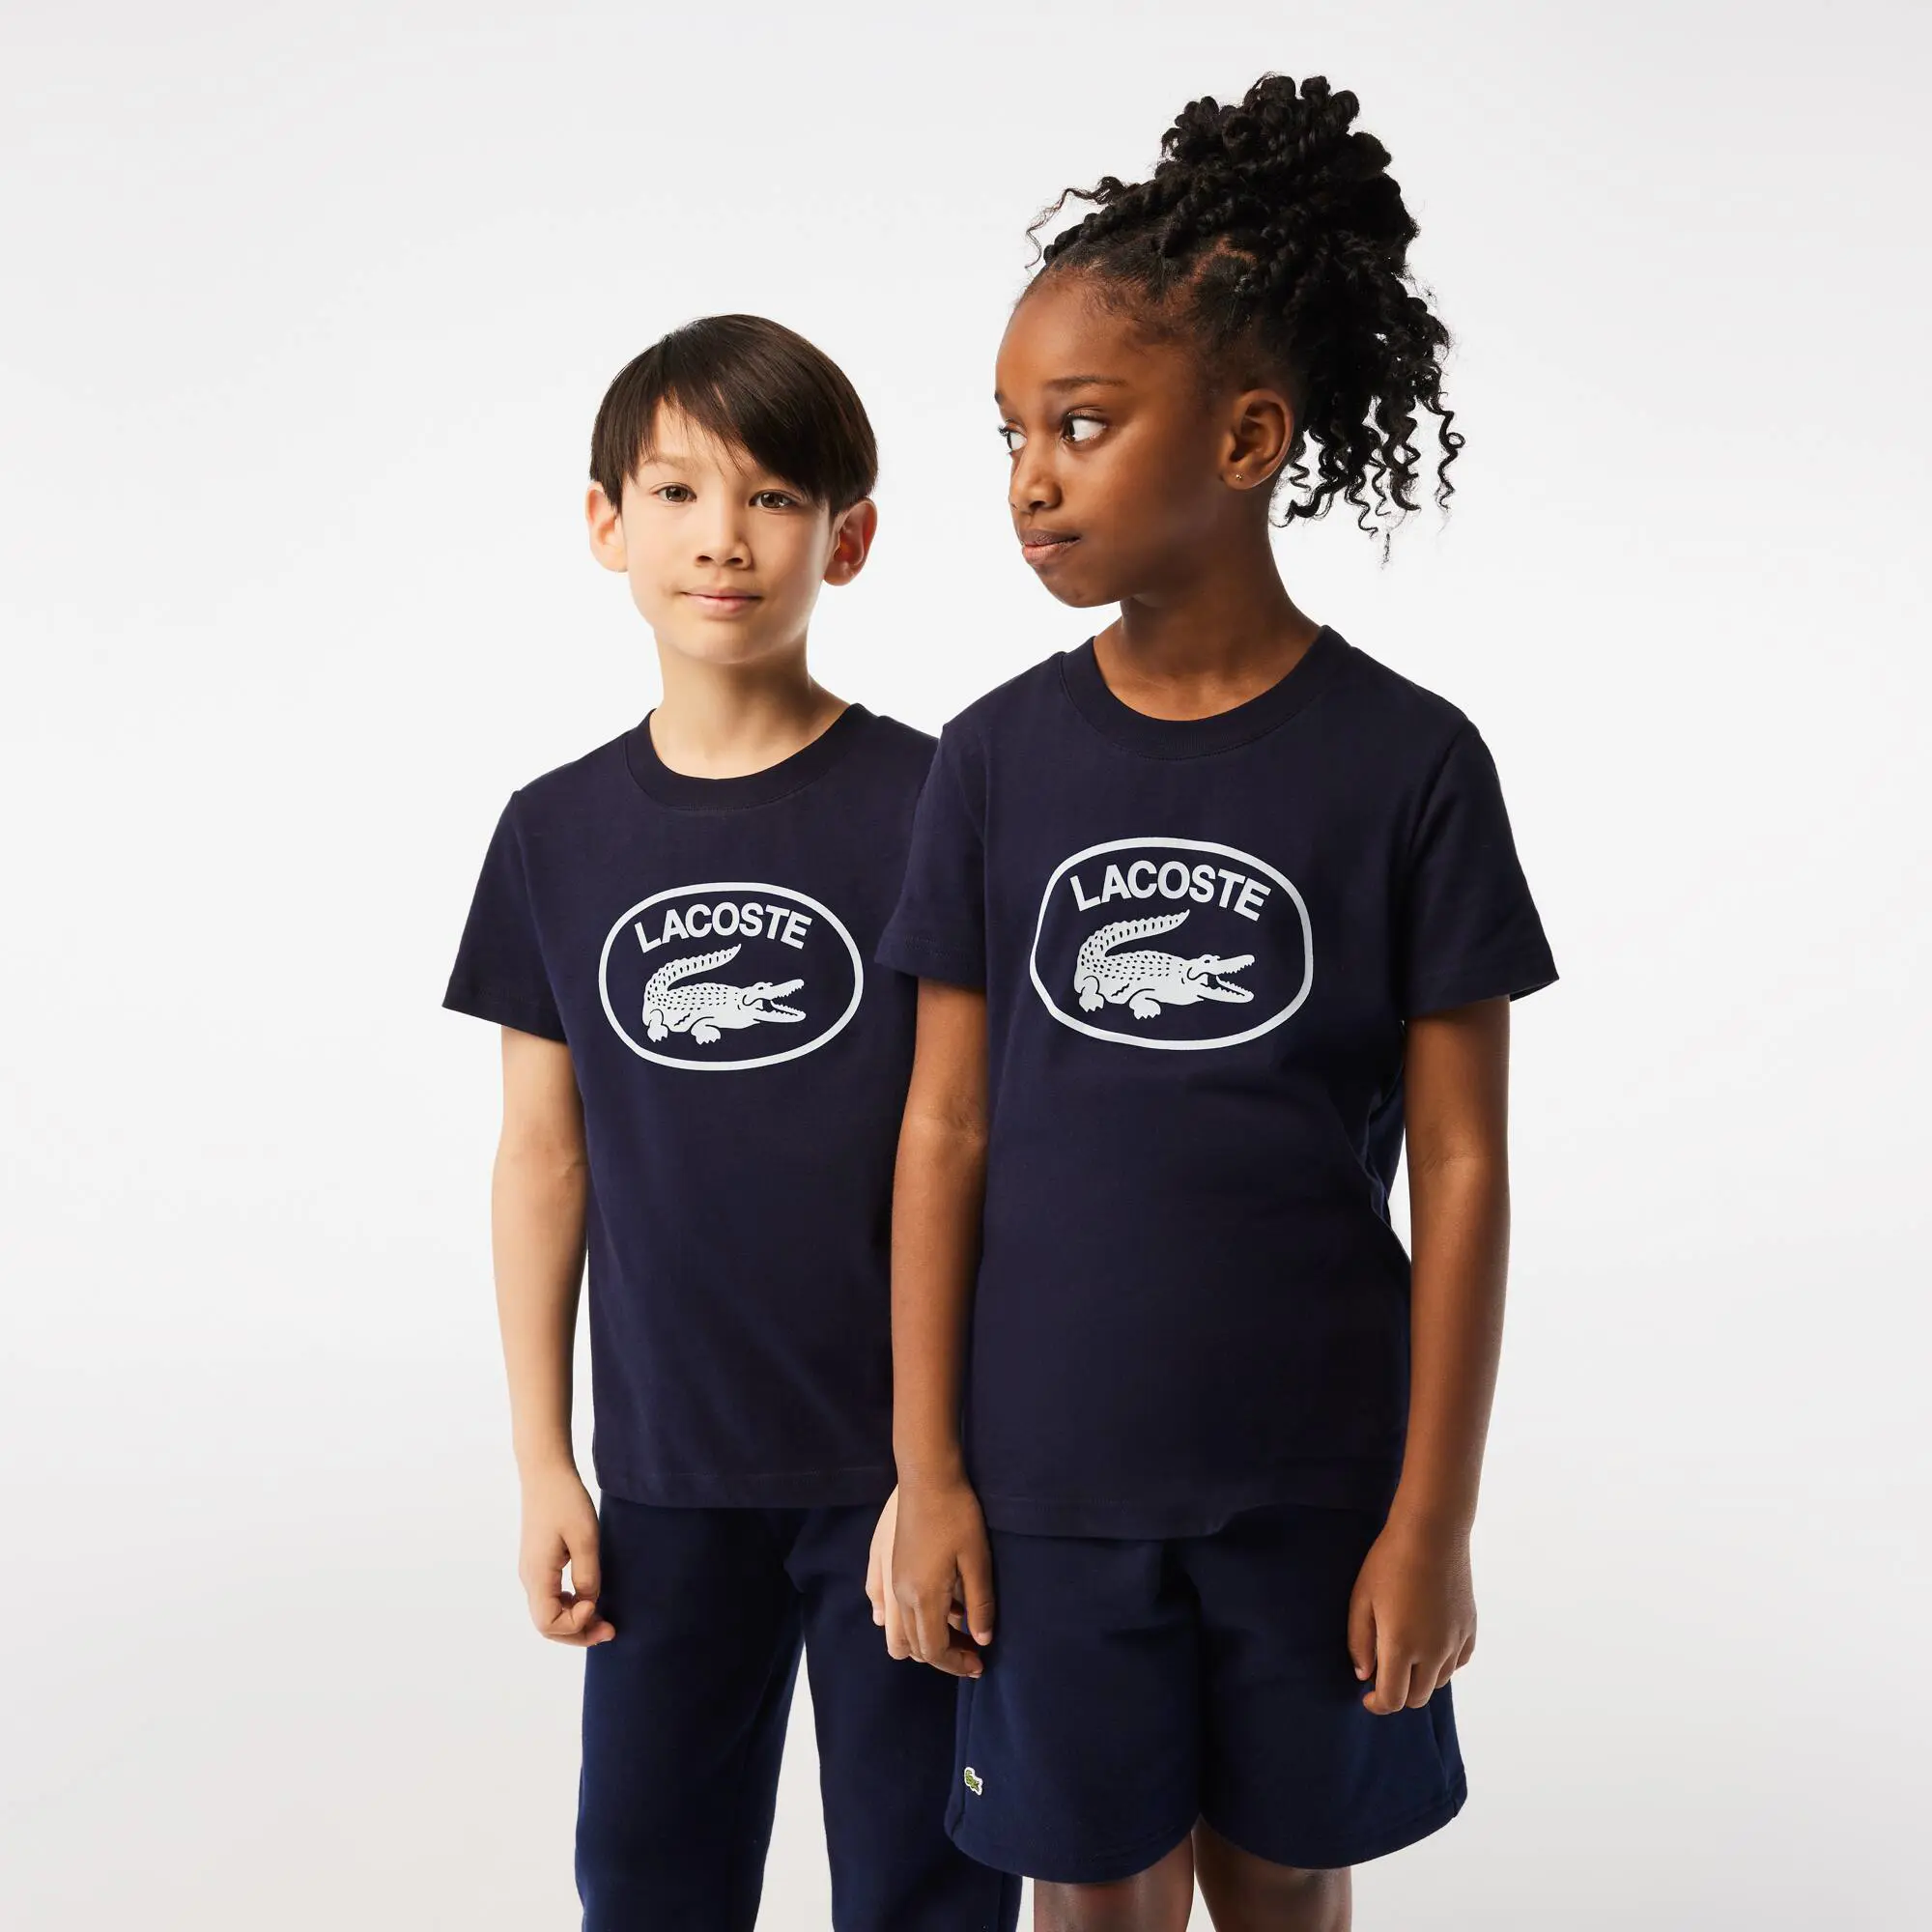 Lacoste T-shirt da bambini in jersey di cotone con logo a contrasto Lacoste. 1